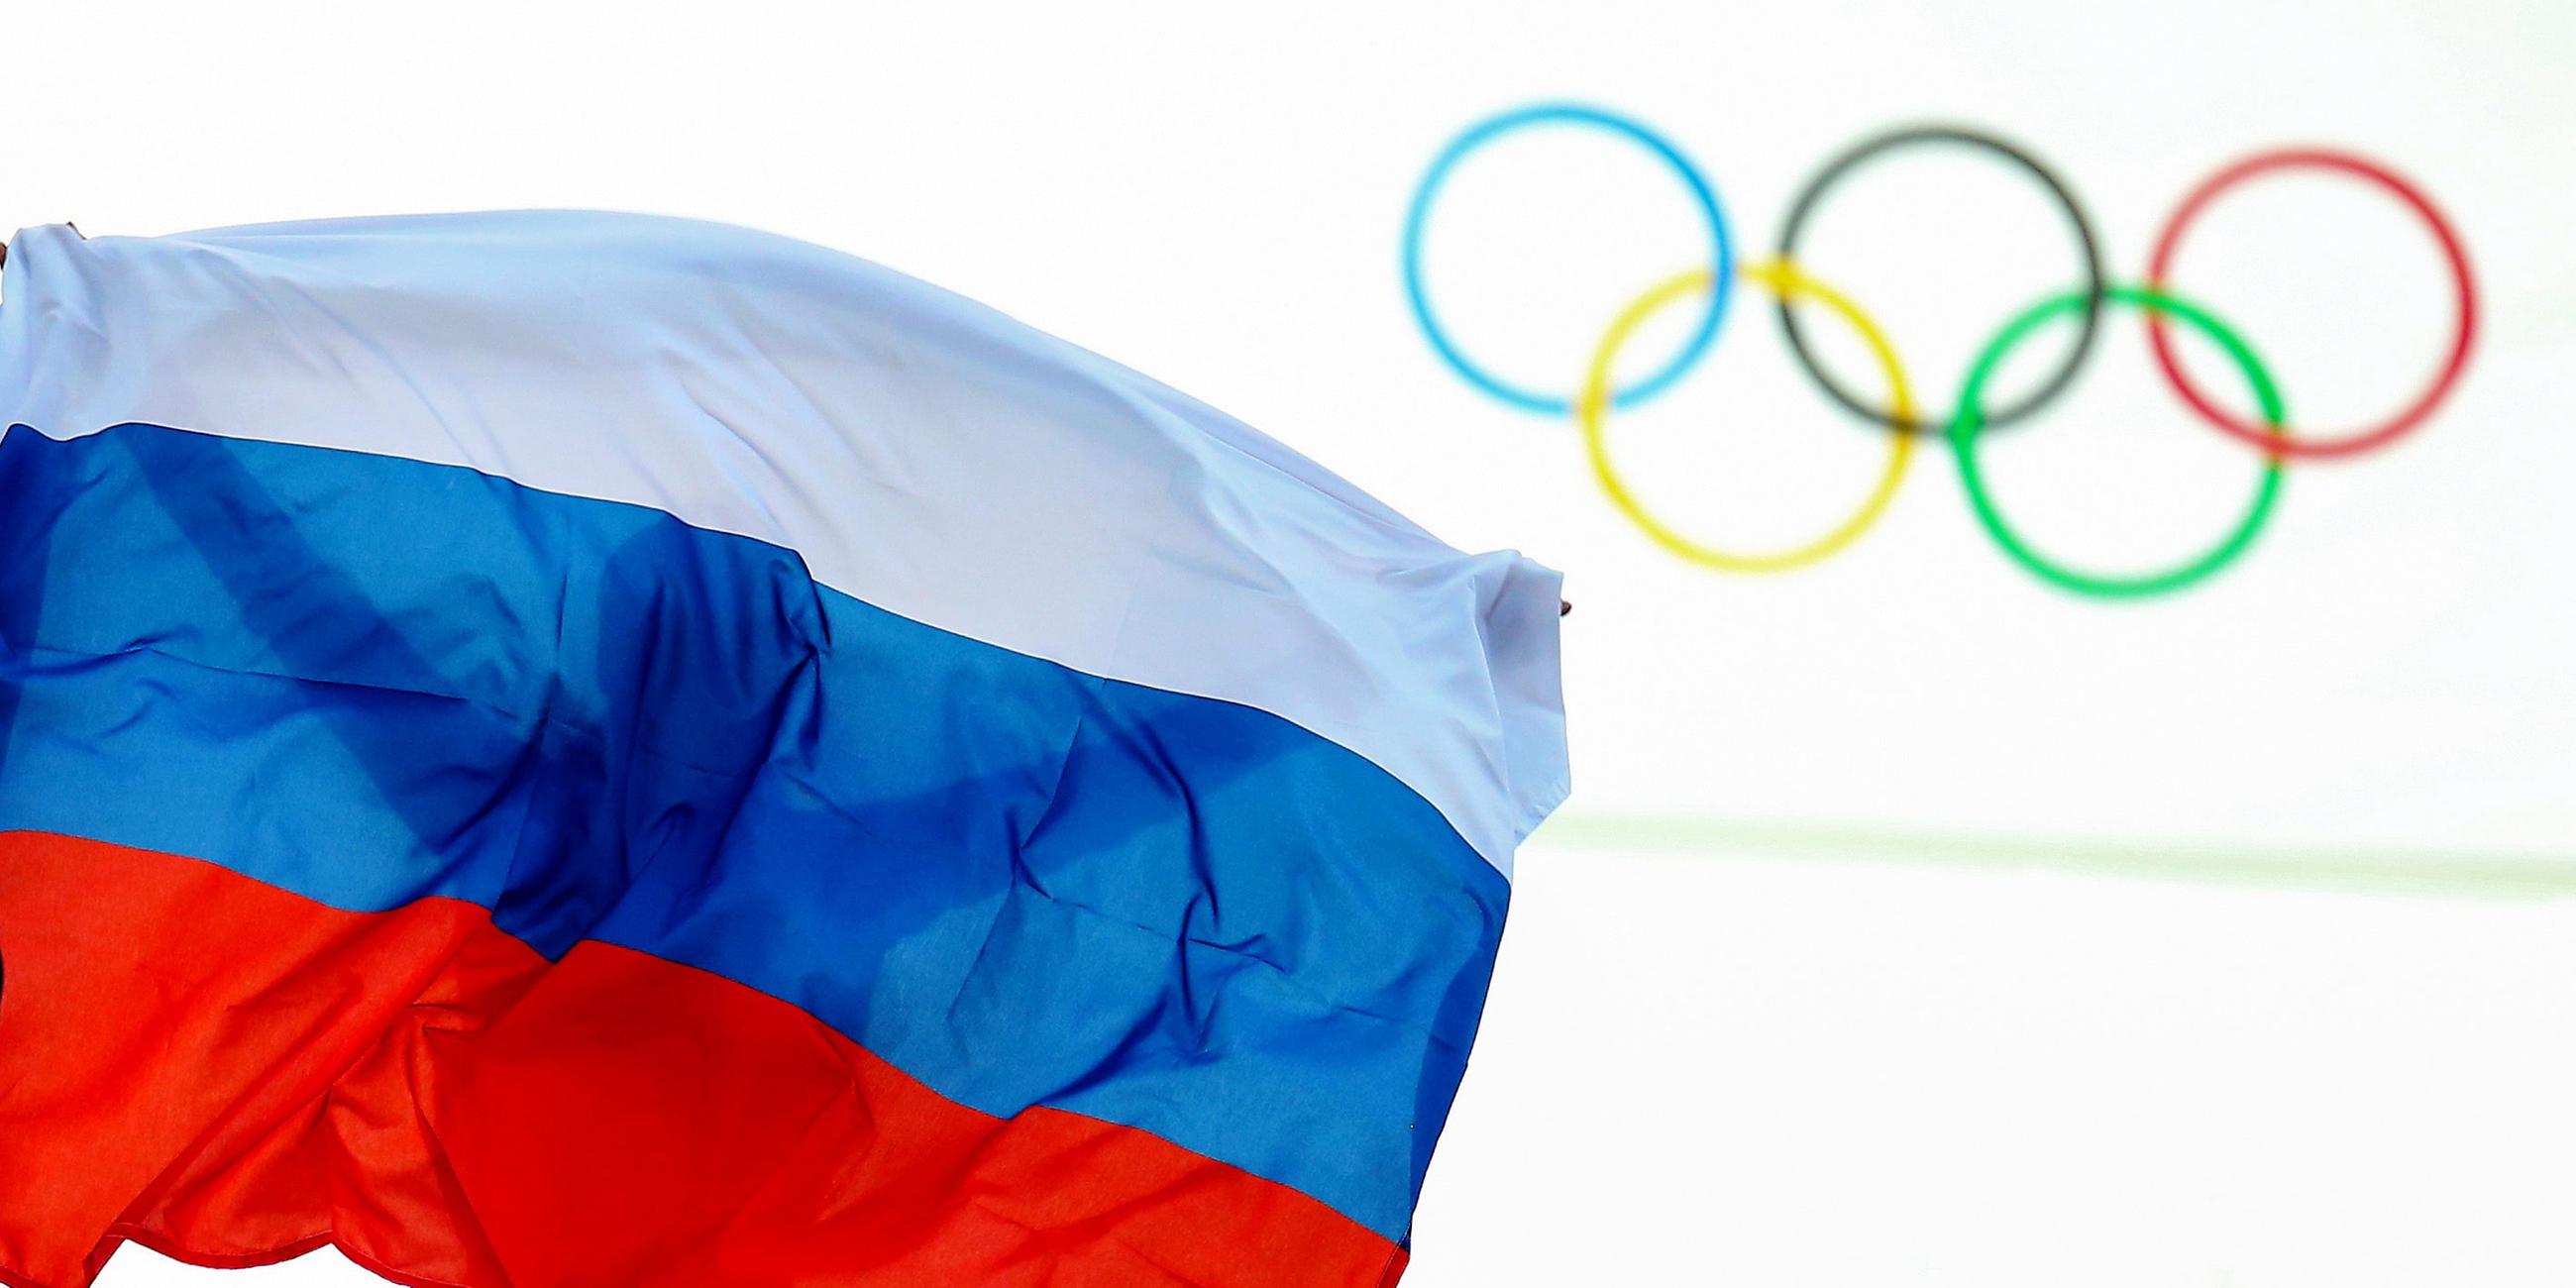 Ein Athlet aus Russland feiert mit einer Flagge nach einem Event bei den Olympischen Spielen 2014.